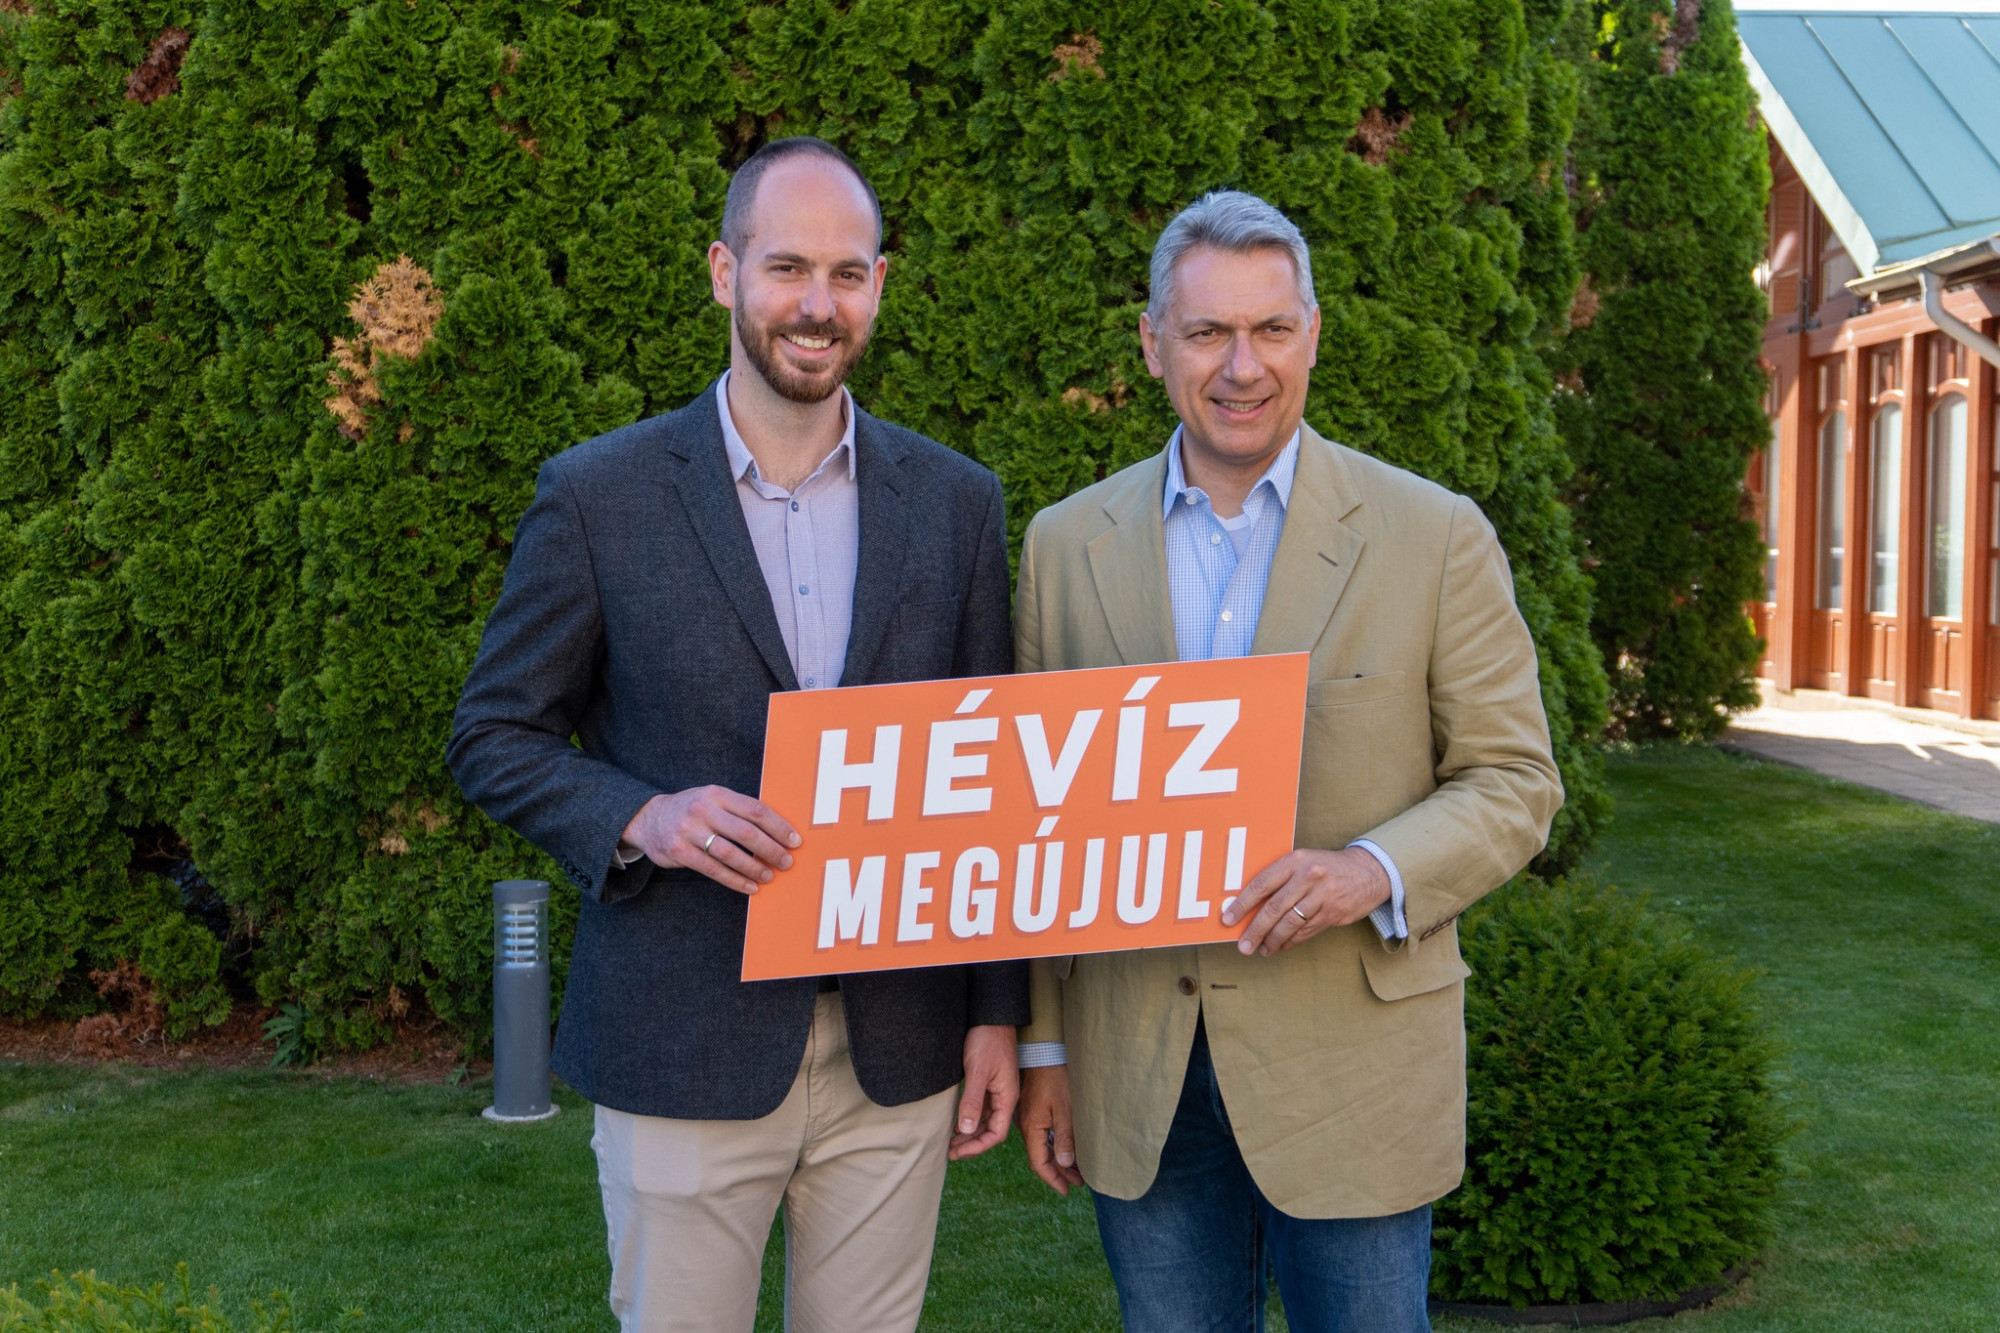 Akkorát buktak a fideszes polgármesterjelöltek Keszthelyen és Hévízen, hogy nyilvánosan mennek egymásnak